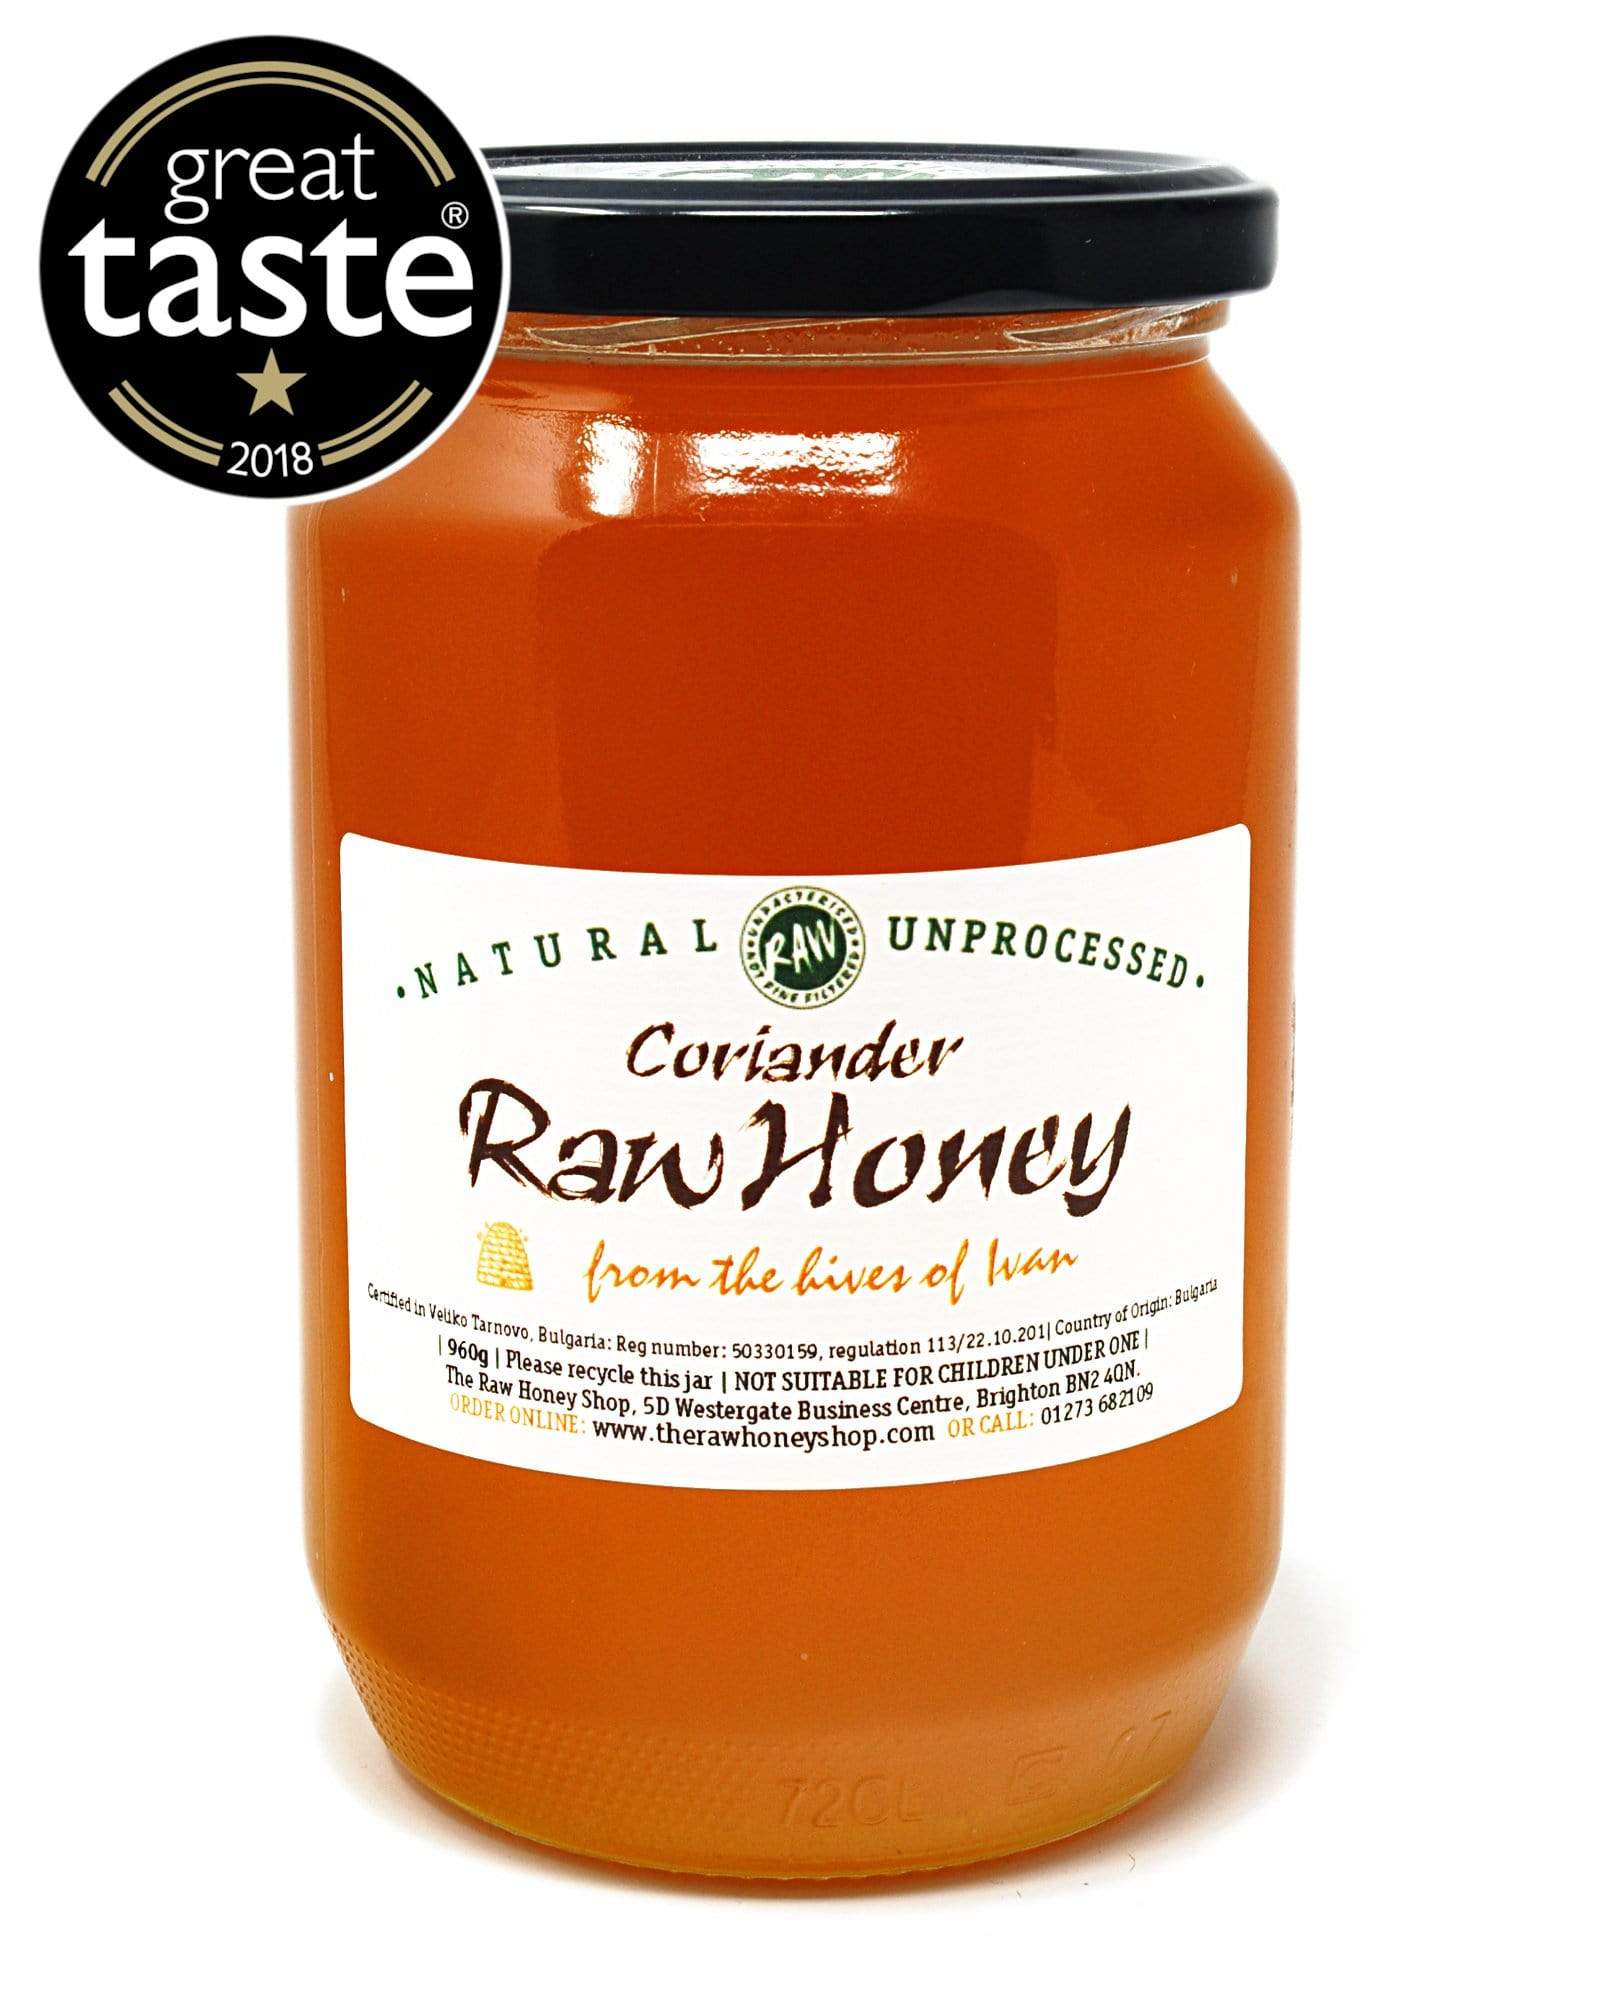 raw coriander honey - 960g